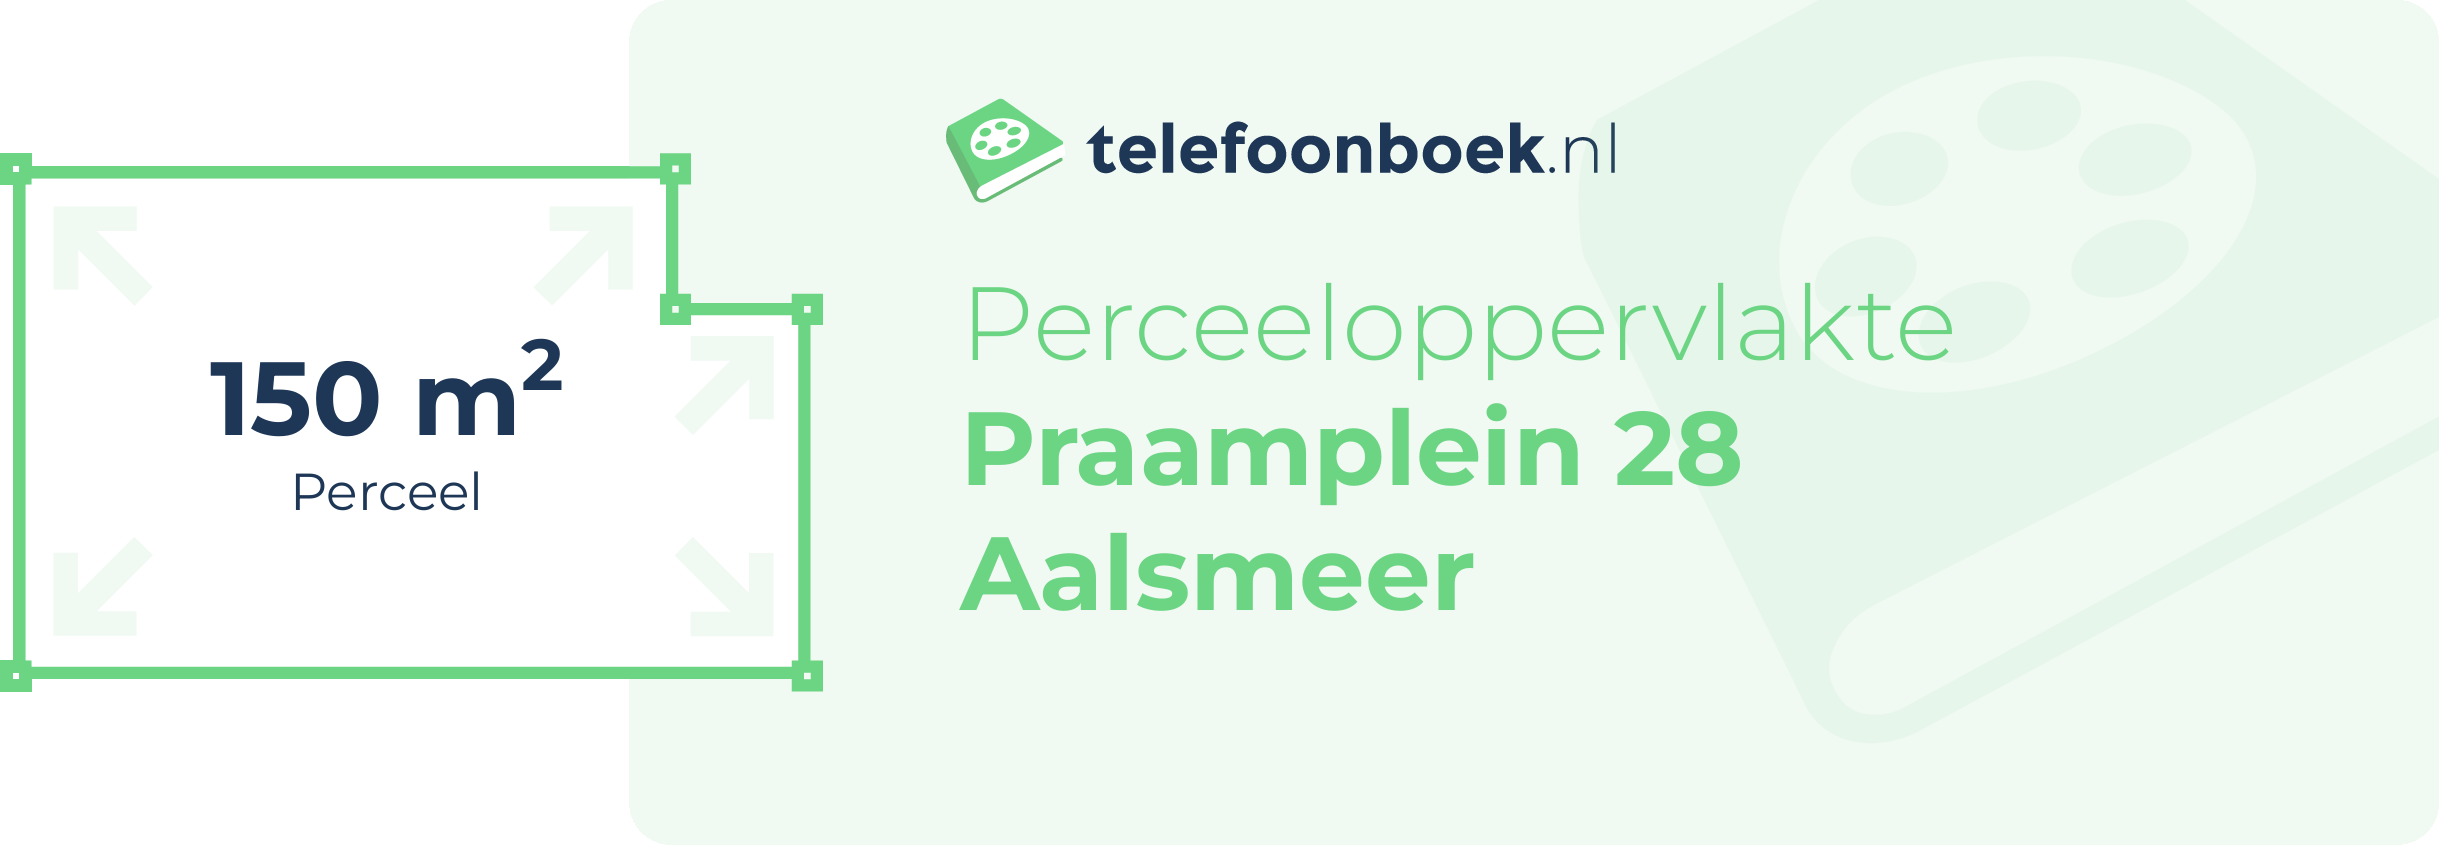 Perceeloppervlakte Praamplein 28 Aalsmeer